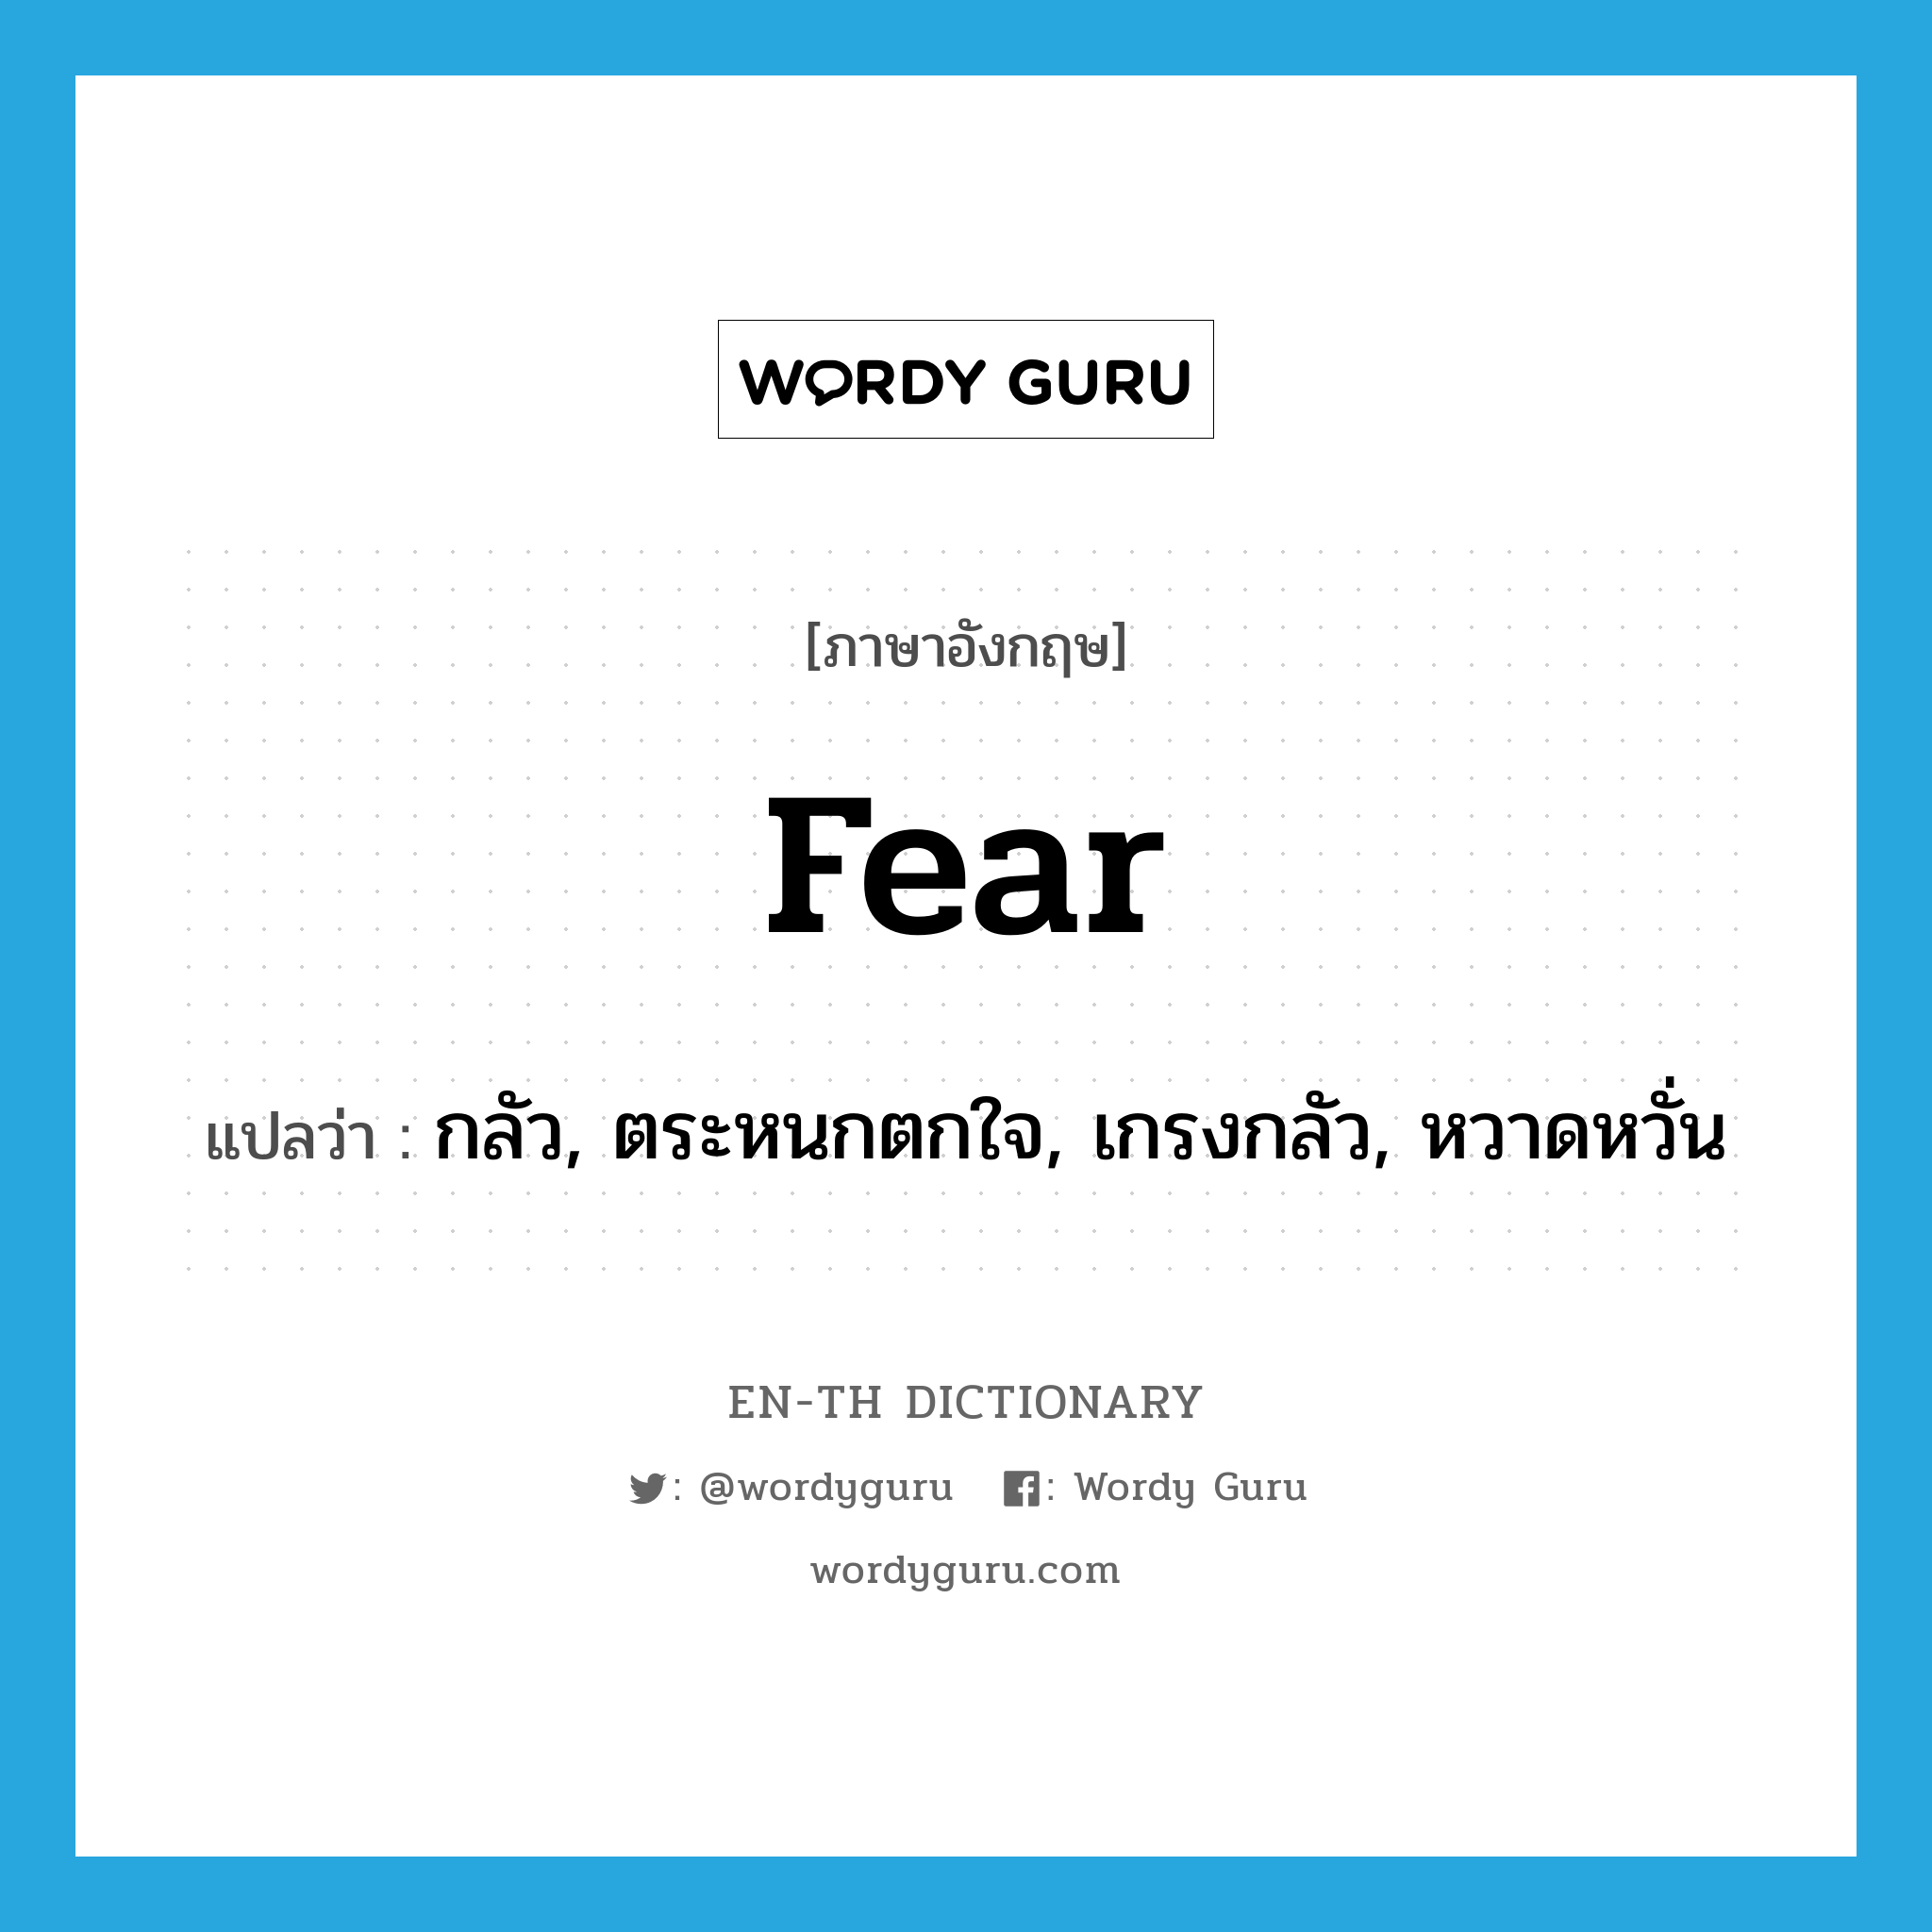 กลัว, ตระหนกตกใจ, เกรงกลัว, หวาดหวั่น ภาษาอังกฤษ?, คำศัพท์ภาษาอังกฤษ กลัว, ตระหนกตกใจ, เกรงกลัว, หวาดหวั่น แปลว่า fear ประเภท VI หมวด VI